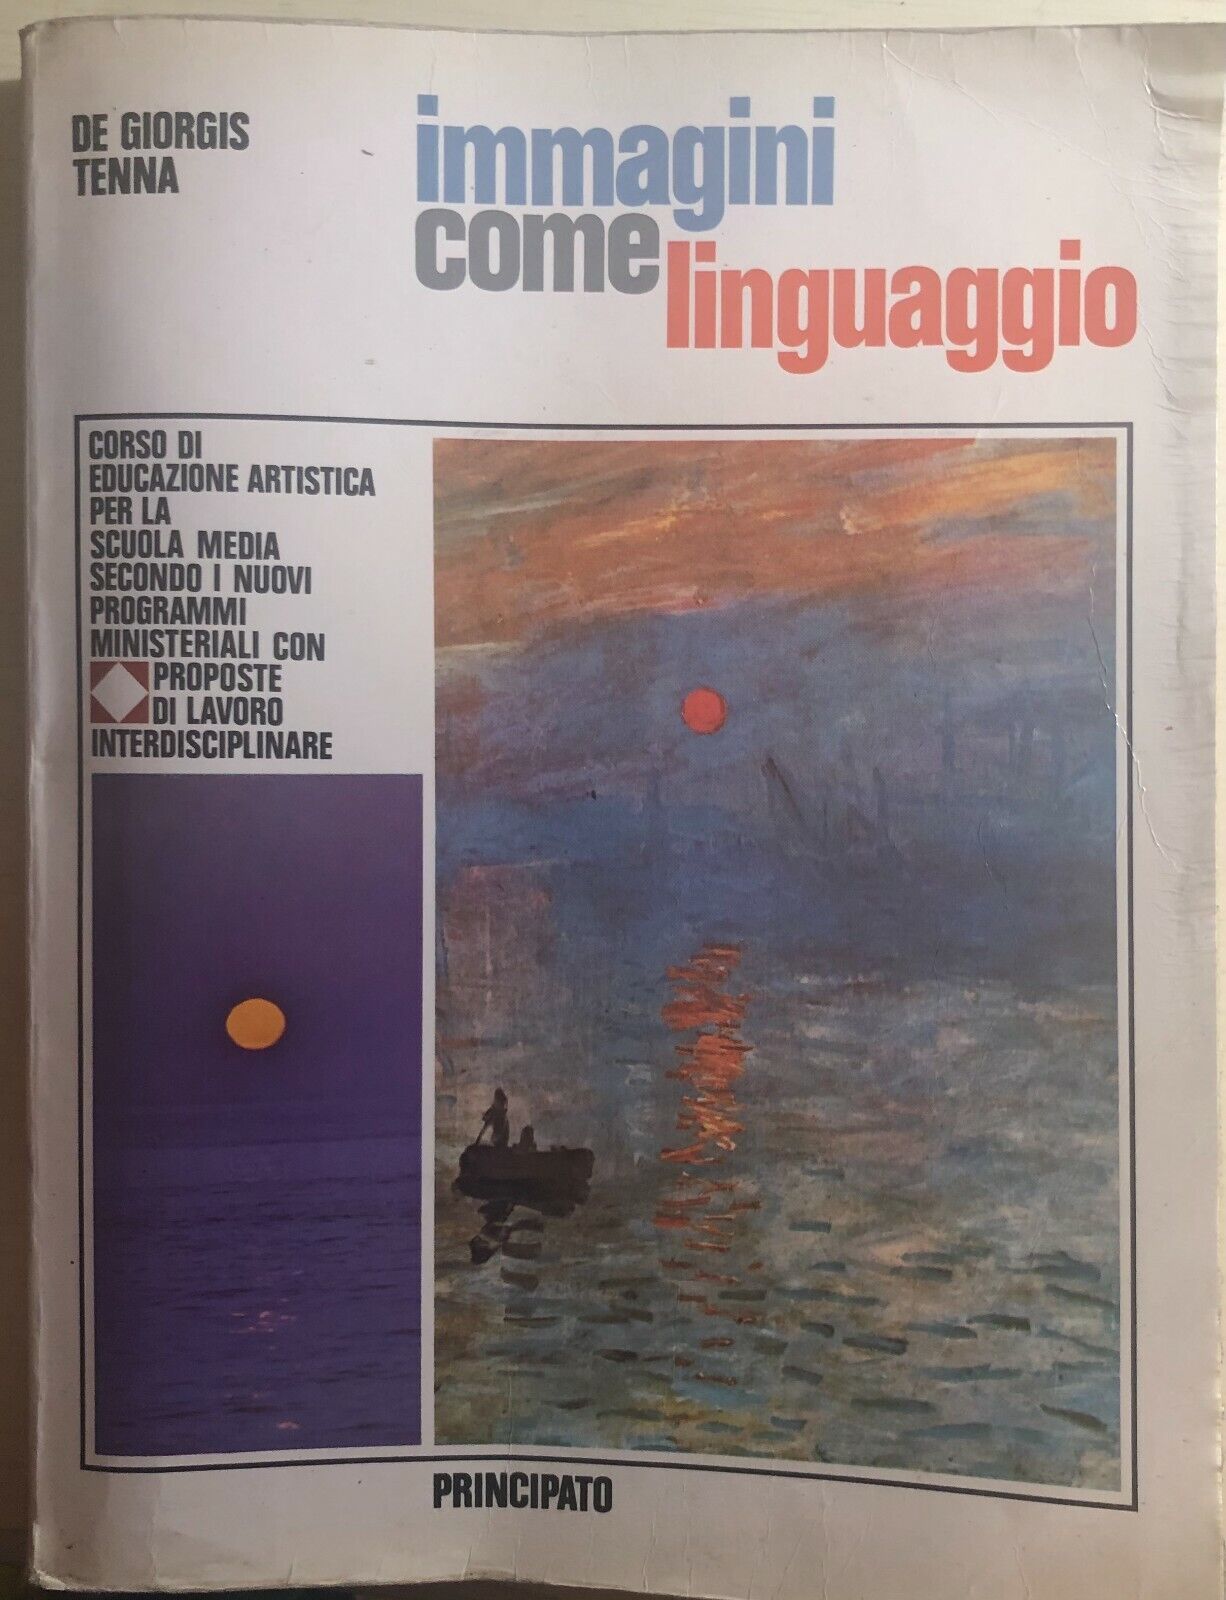 Immagini come linguaggio di De Giorgis-tenna,  1981,  Principato